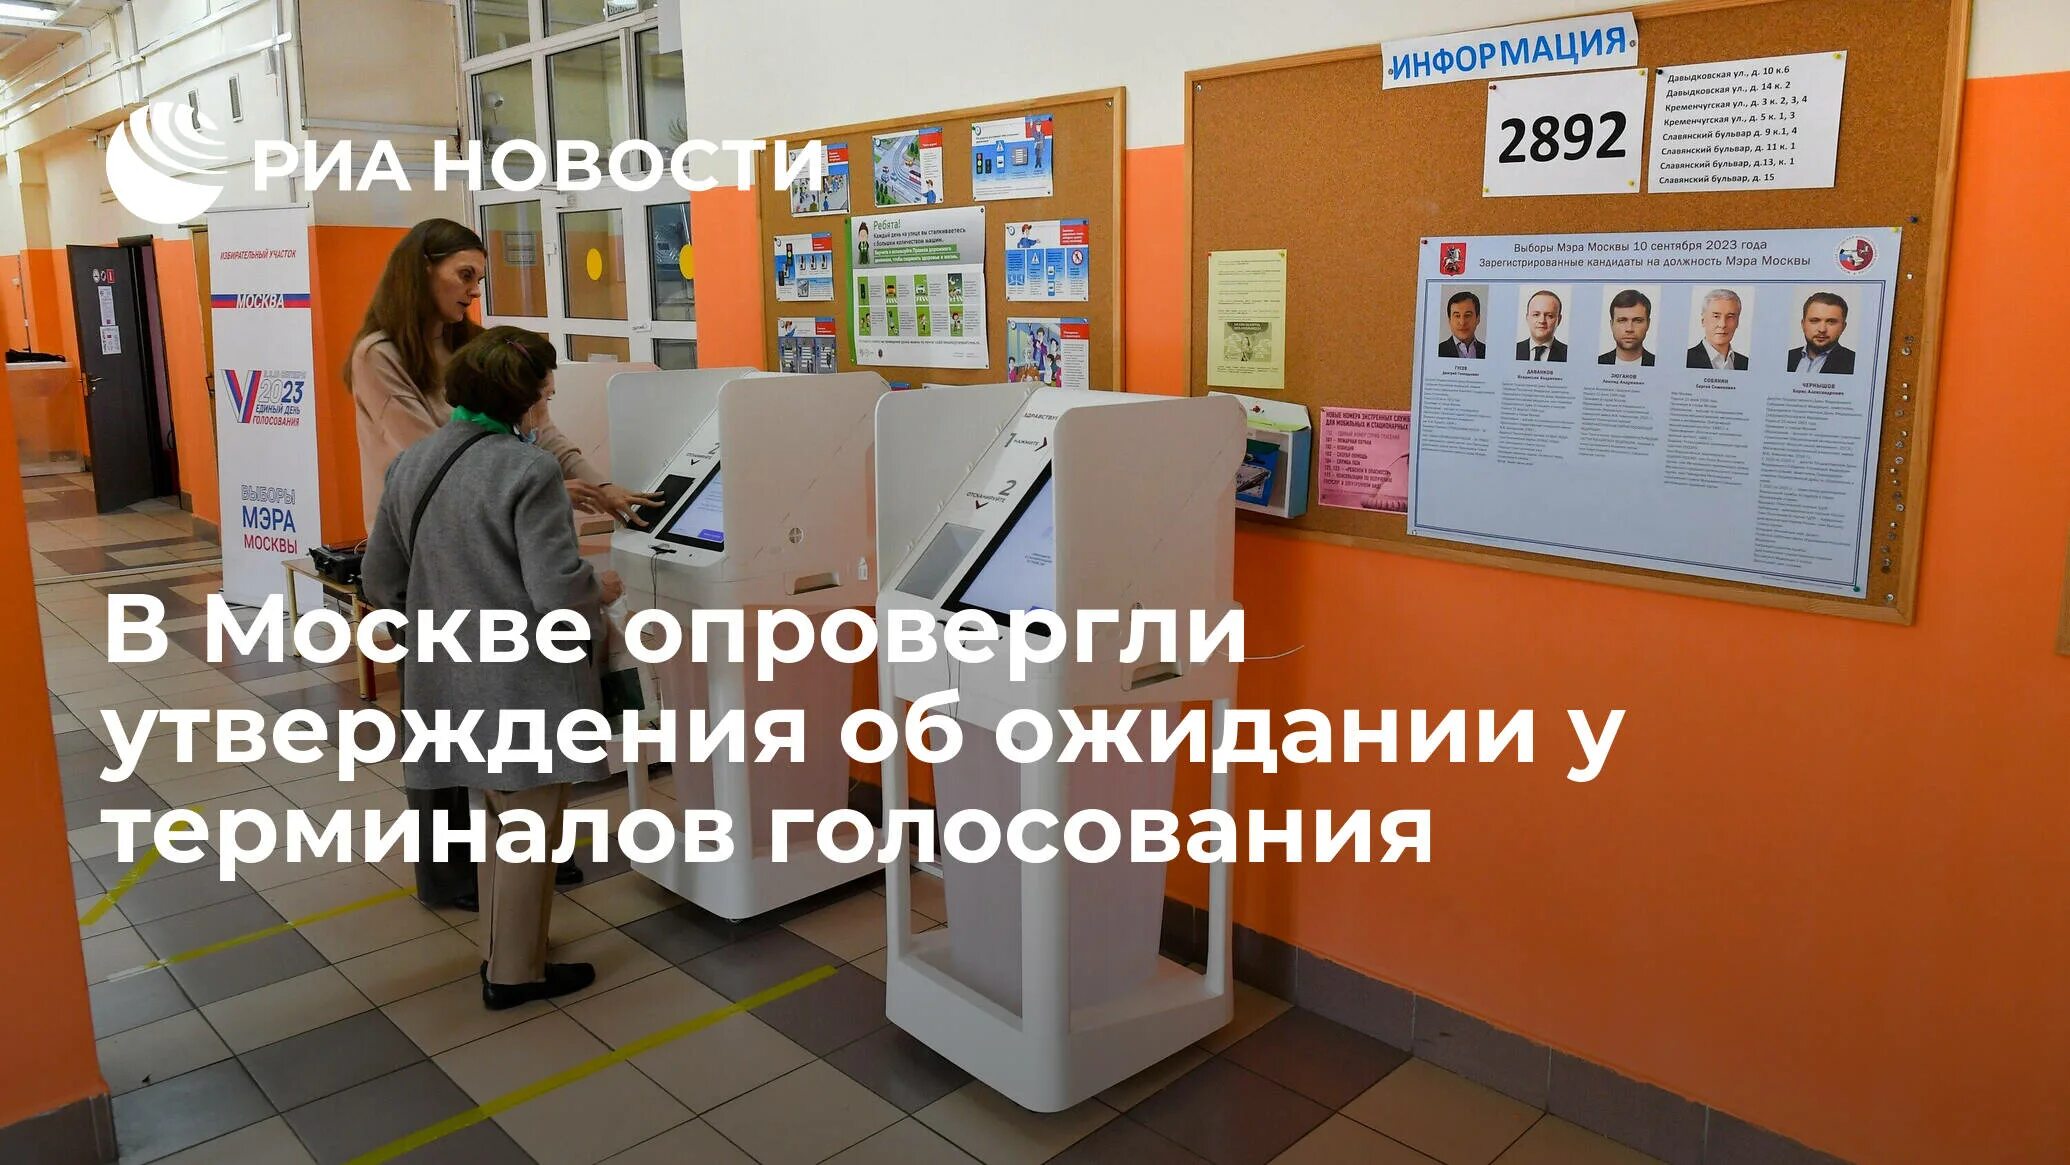 Терминал электронного голосования Москва. Терминал электронного голосования. Терминал для голосования. Терминал электронного голосования как работает. Терминалы для голосования